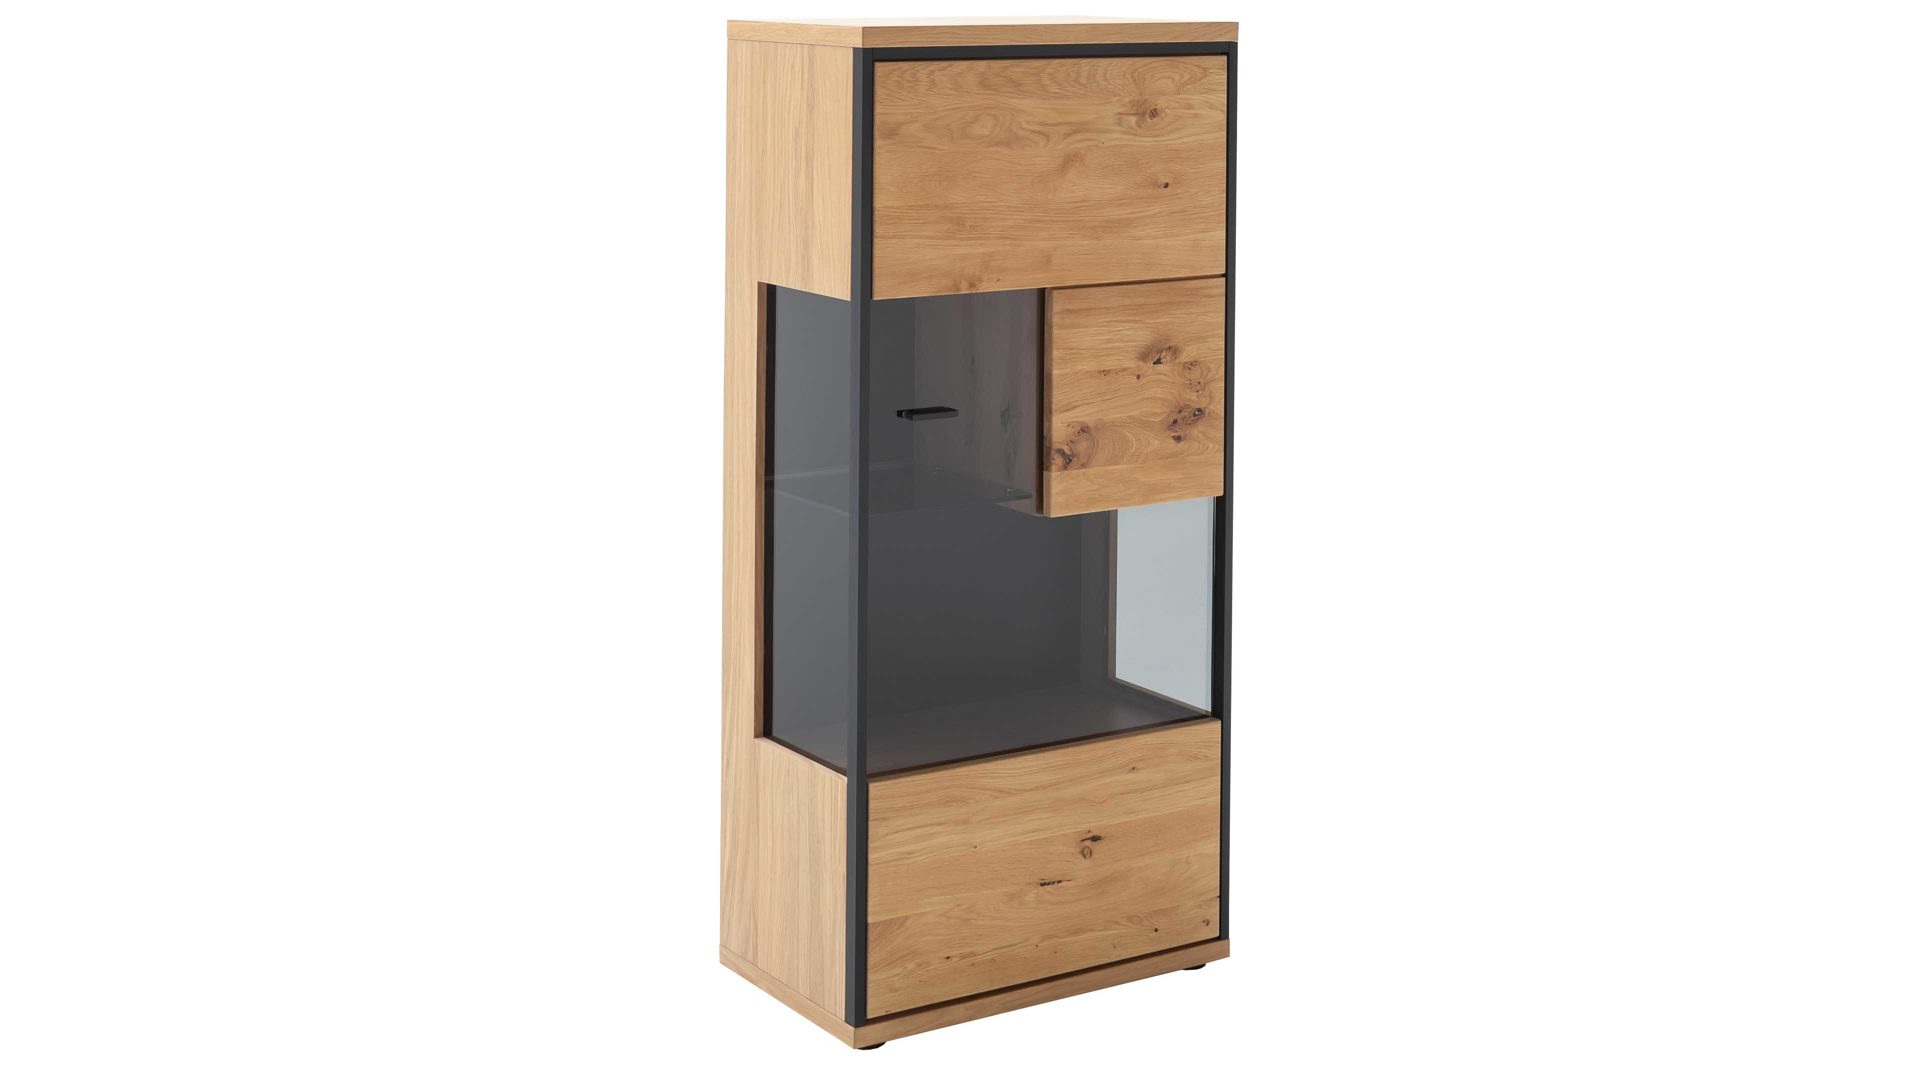 Highboard Mca furniture aus Holz in Holzfarben Wohnprogramm Bari - Highboard Asteiche Bianco – eine Türe, Breite ca. 68 cm